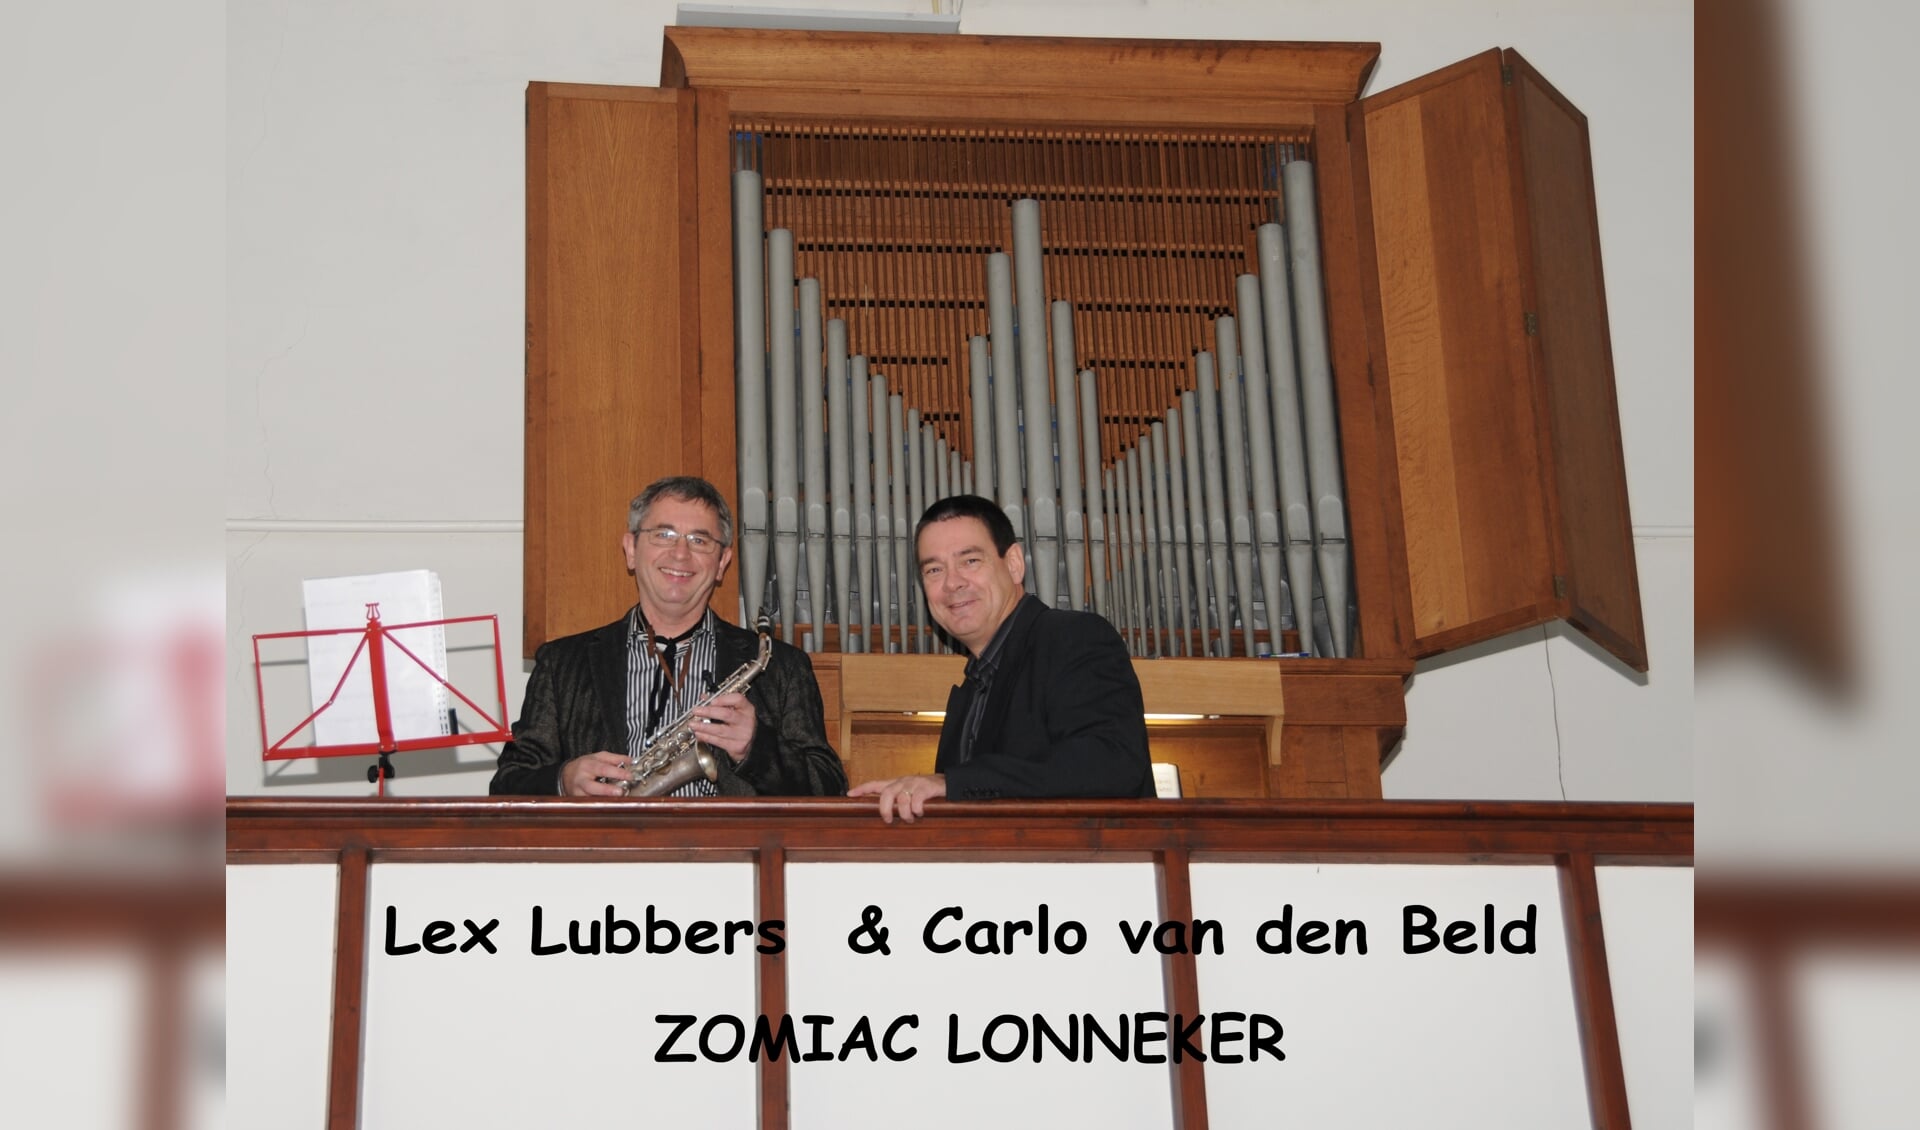 Muzikanten concert Zomiac Lonneker